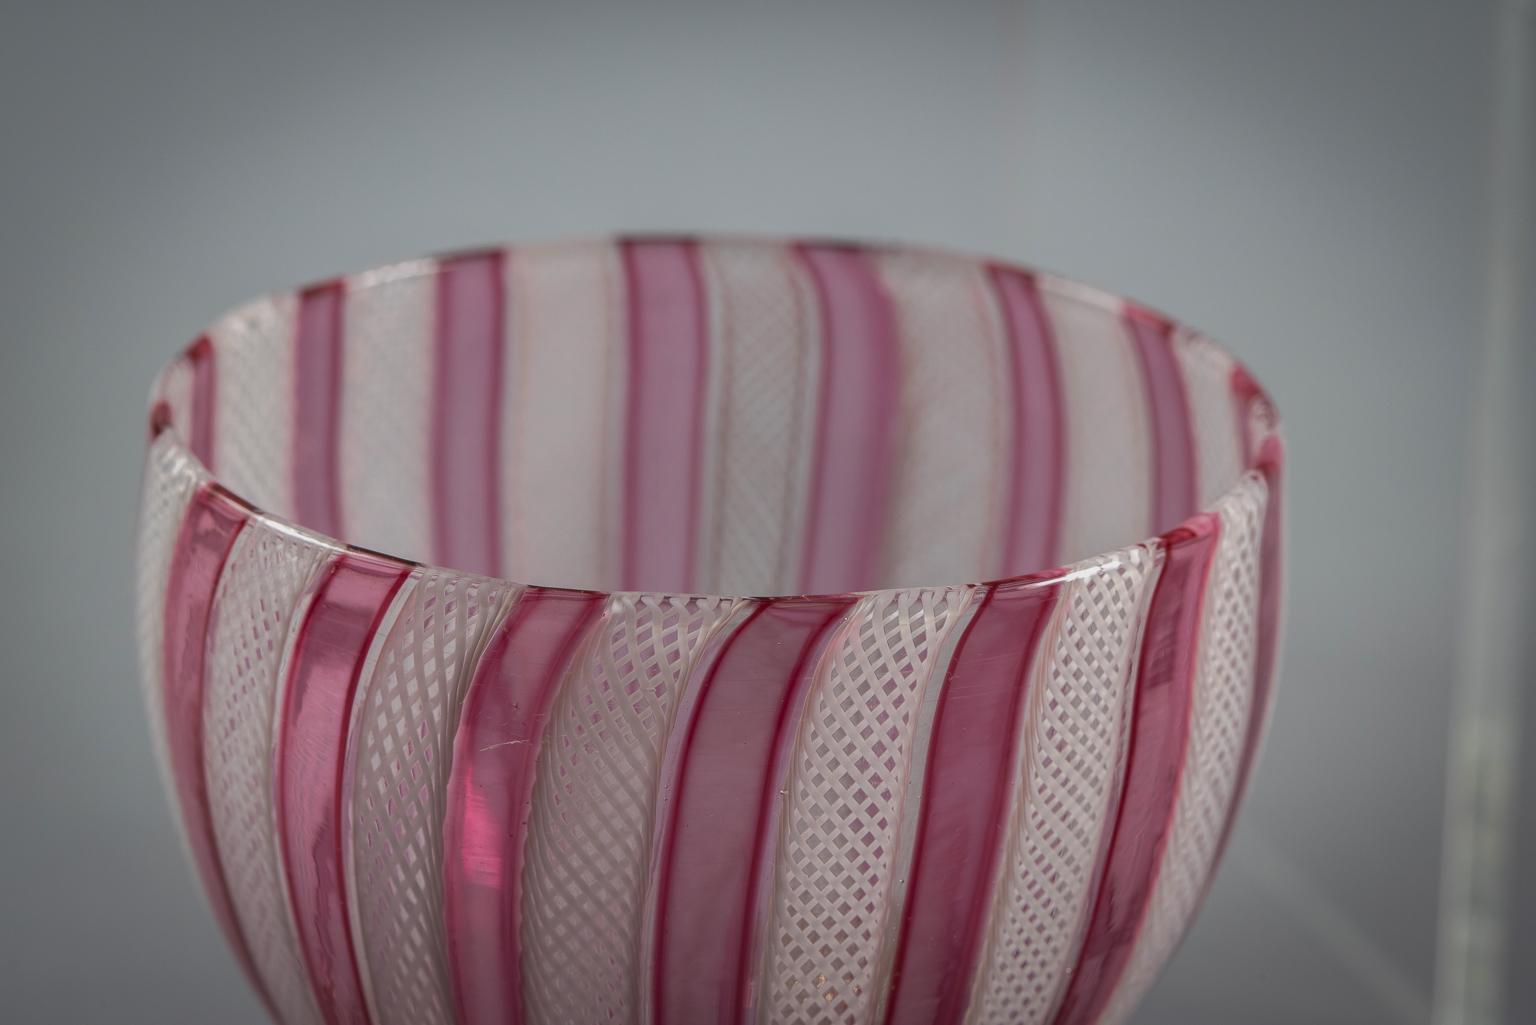 Jeweils mit latticinio Fäden abwechselnd mit einem rosa-roten Band, mit Stacheln angewendet.